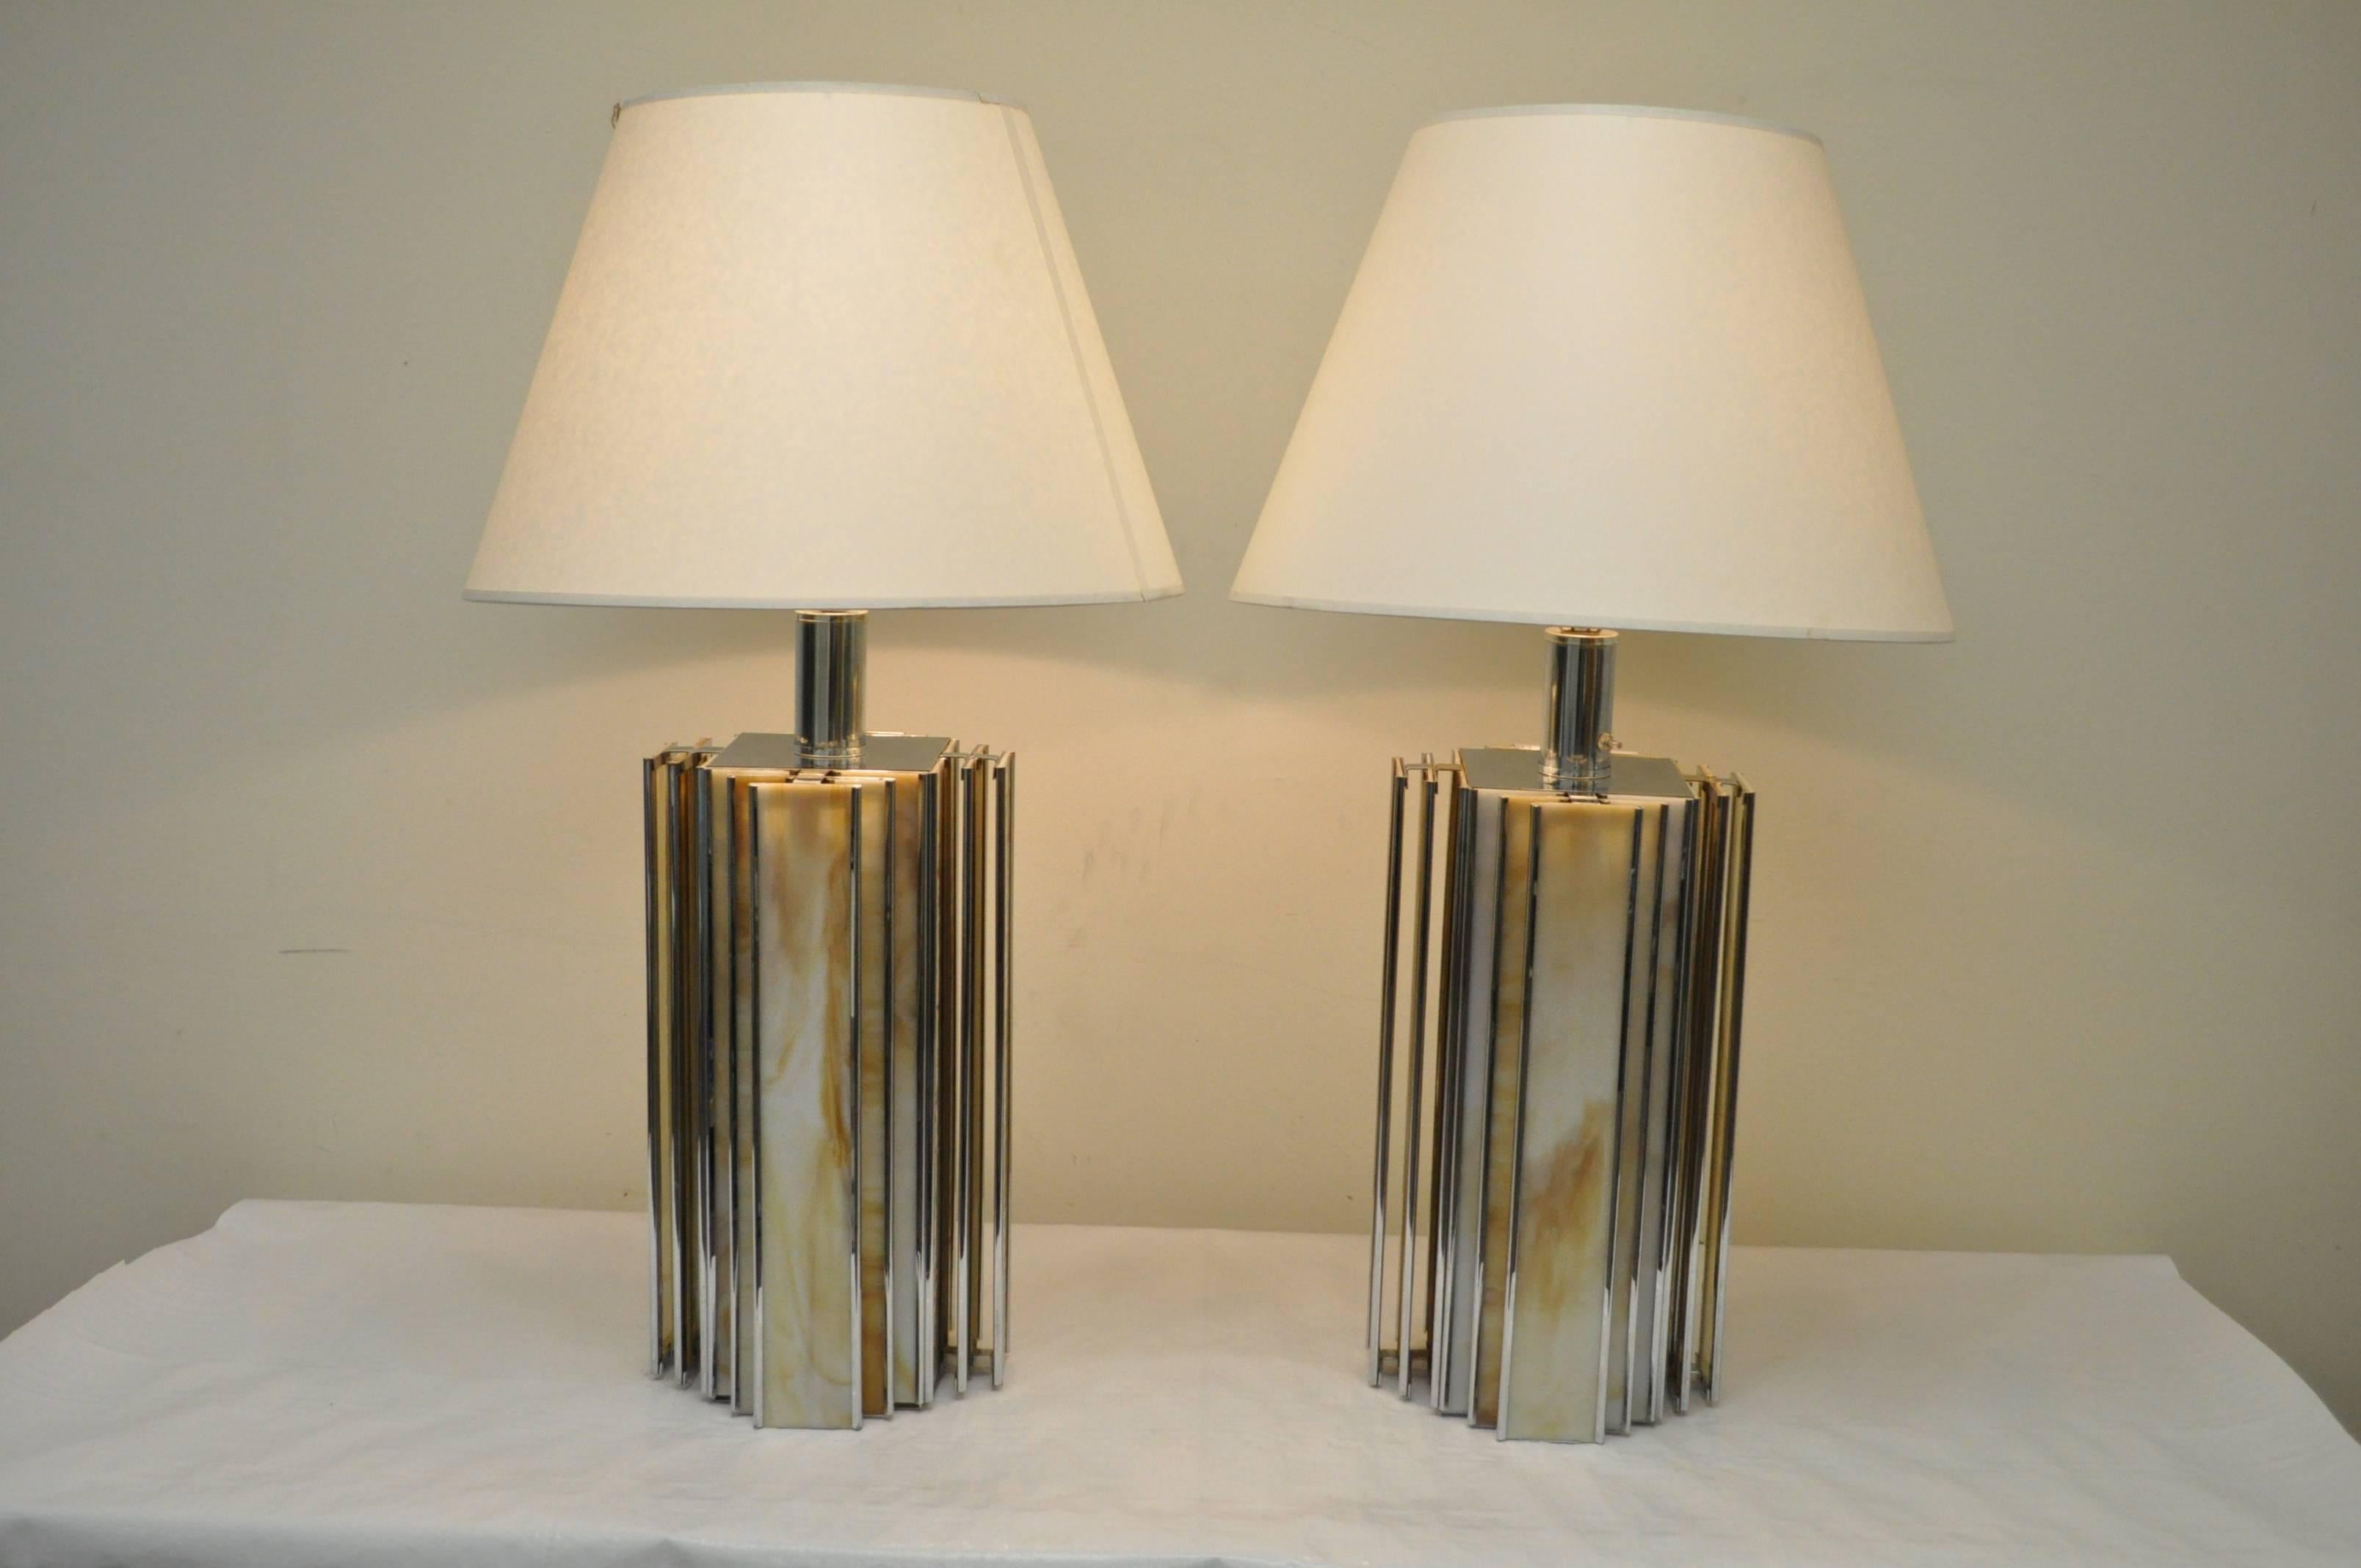 Paire de lampes de table vintage en chrome et verre de scorie. Les lampes ont un design moderne et élégant avec des lignes géométriques inspirées de l'Art Déco, et sont construites avec des cadres chromés et des inserts en verre de scorie richement